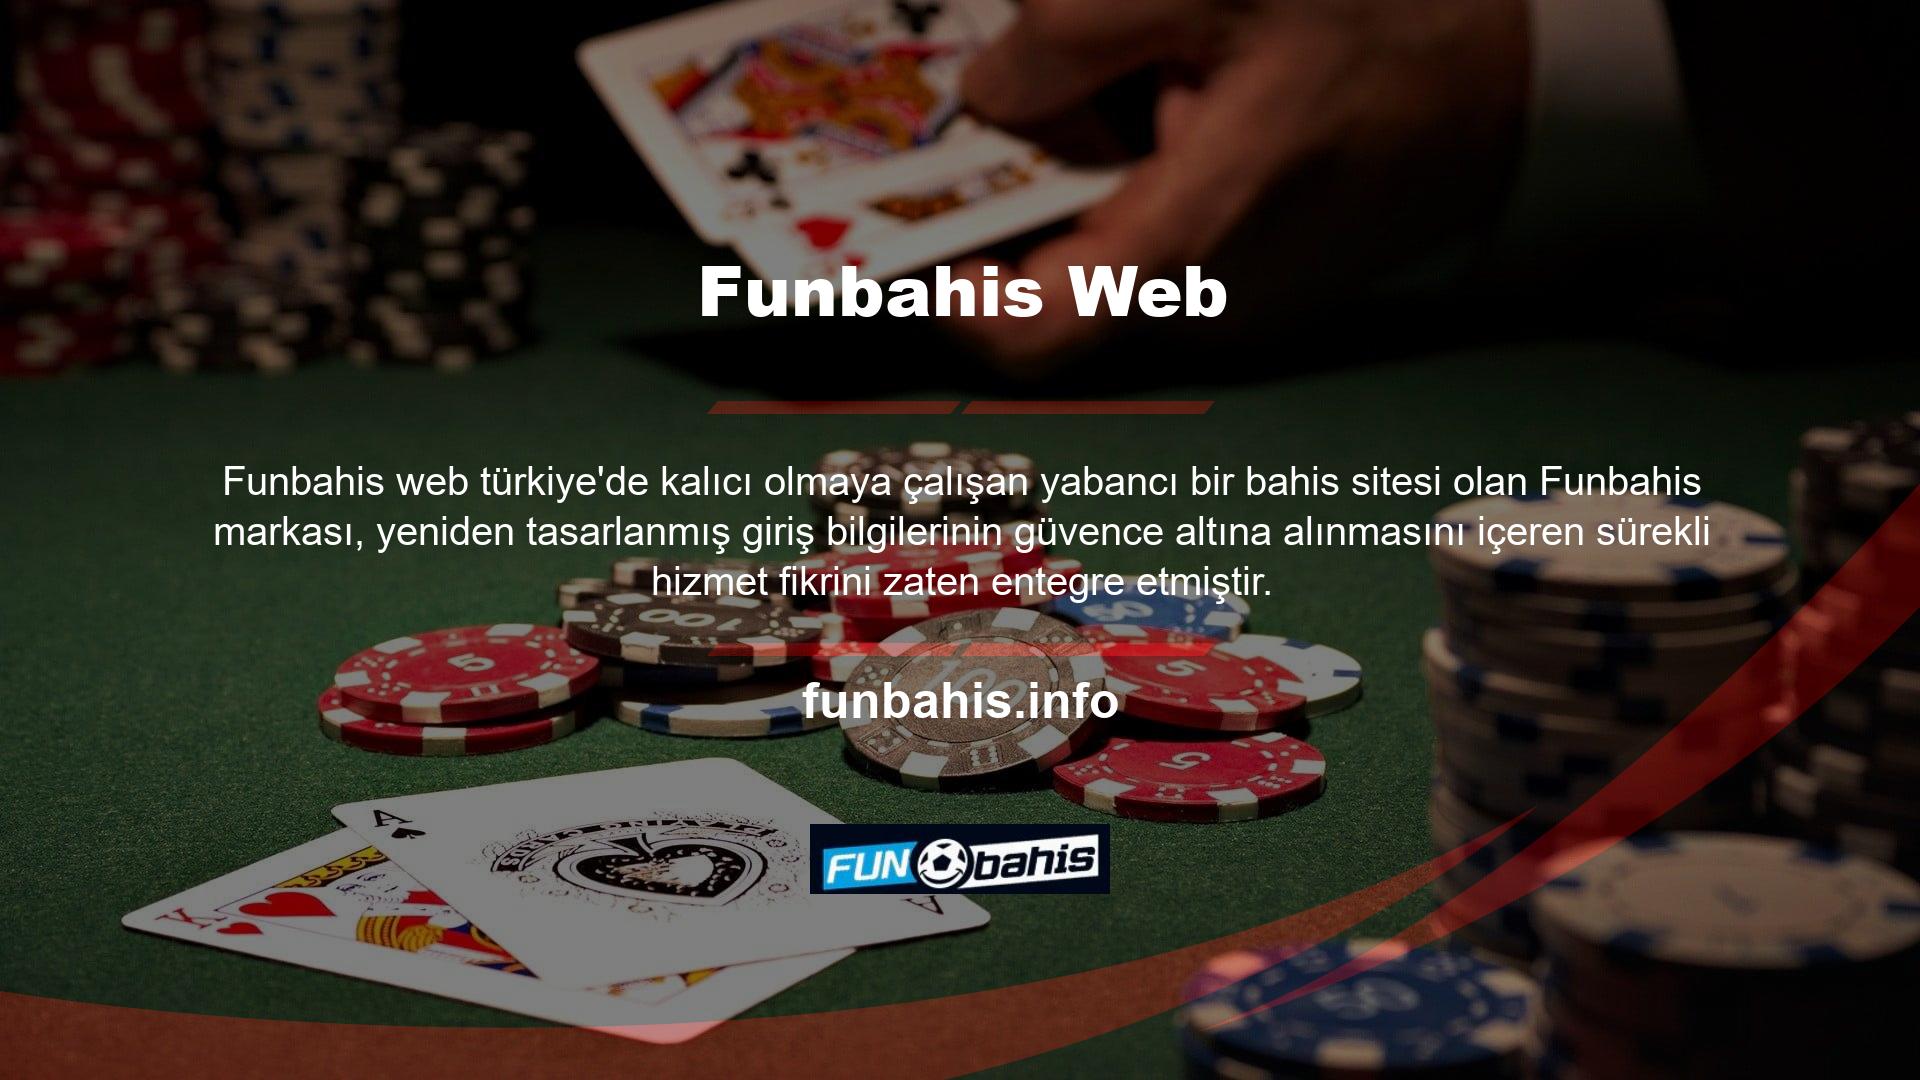 Funbahis web sitesi artık Türkiye pazarında kalıcı bir demirbaştır